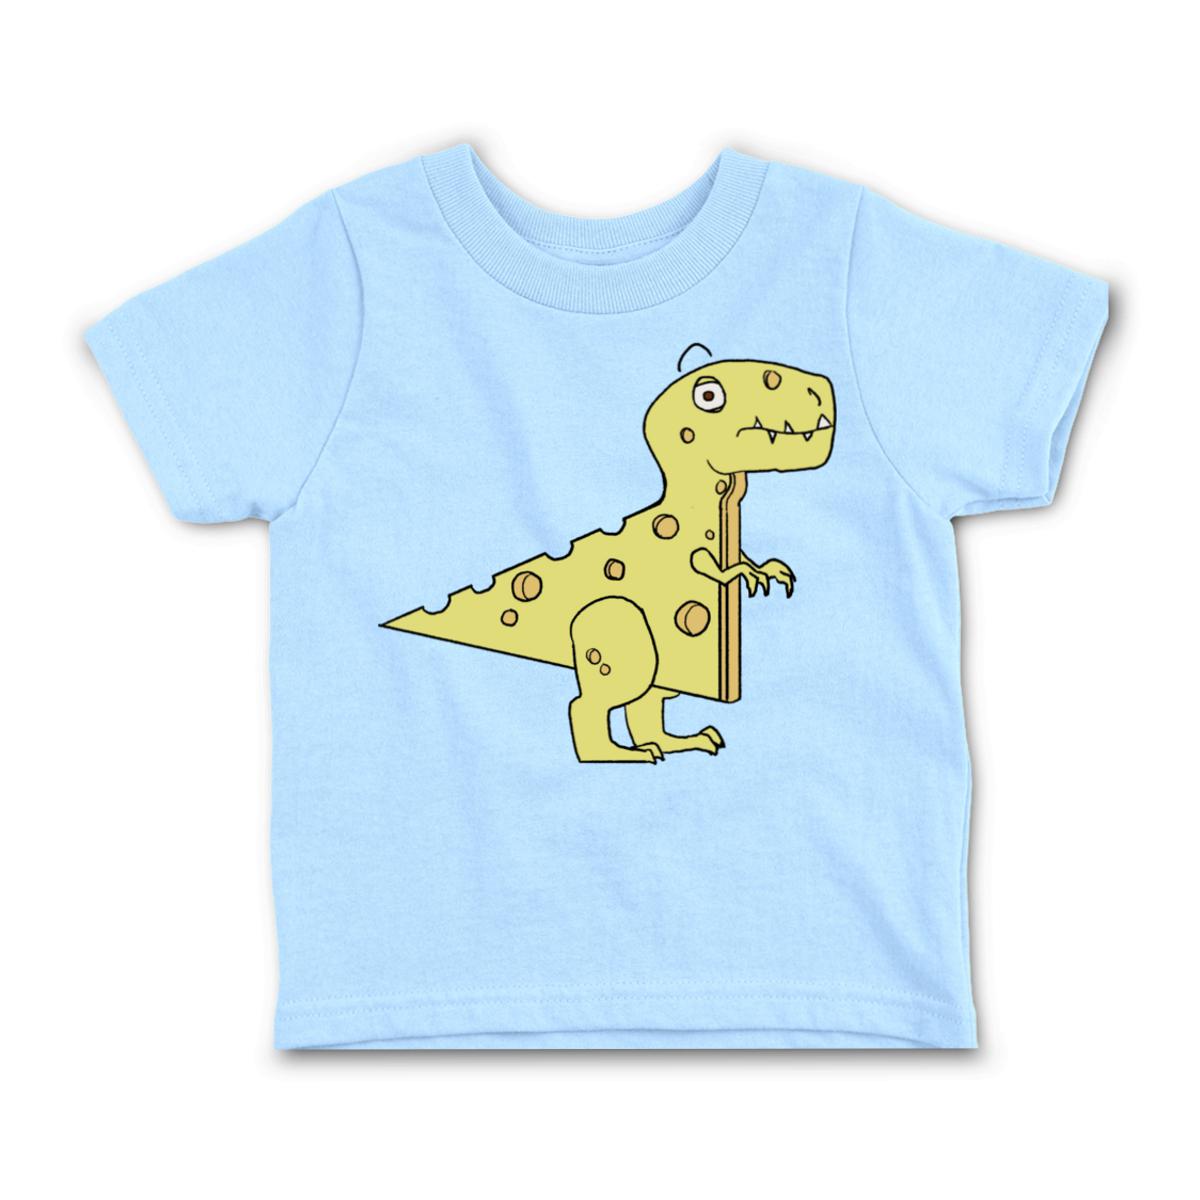 Cheeseosaurus Rex Toddler Tee 4T light-blue